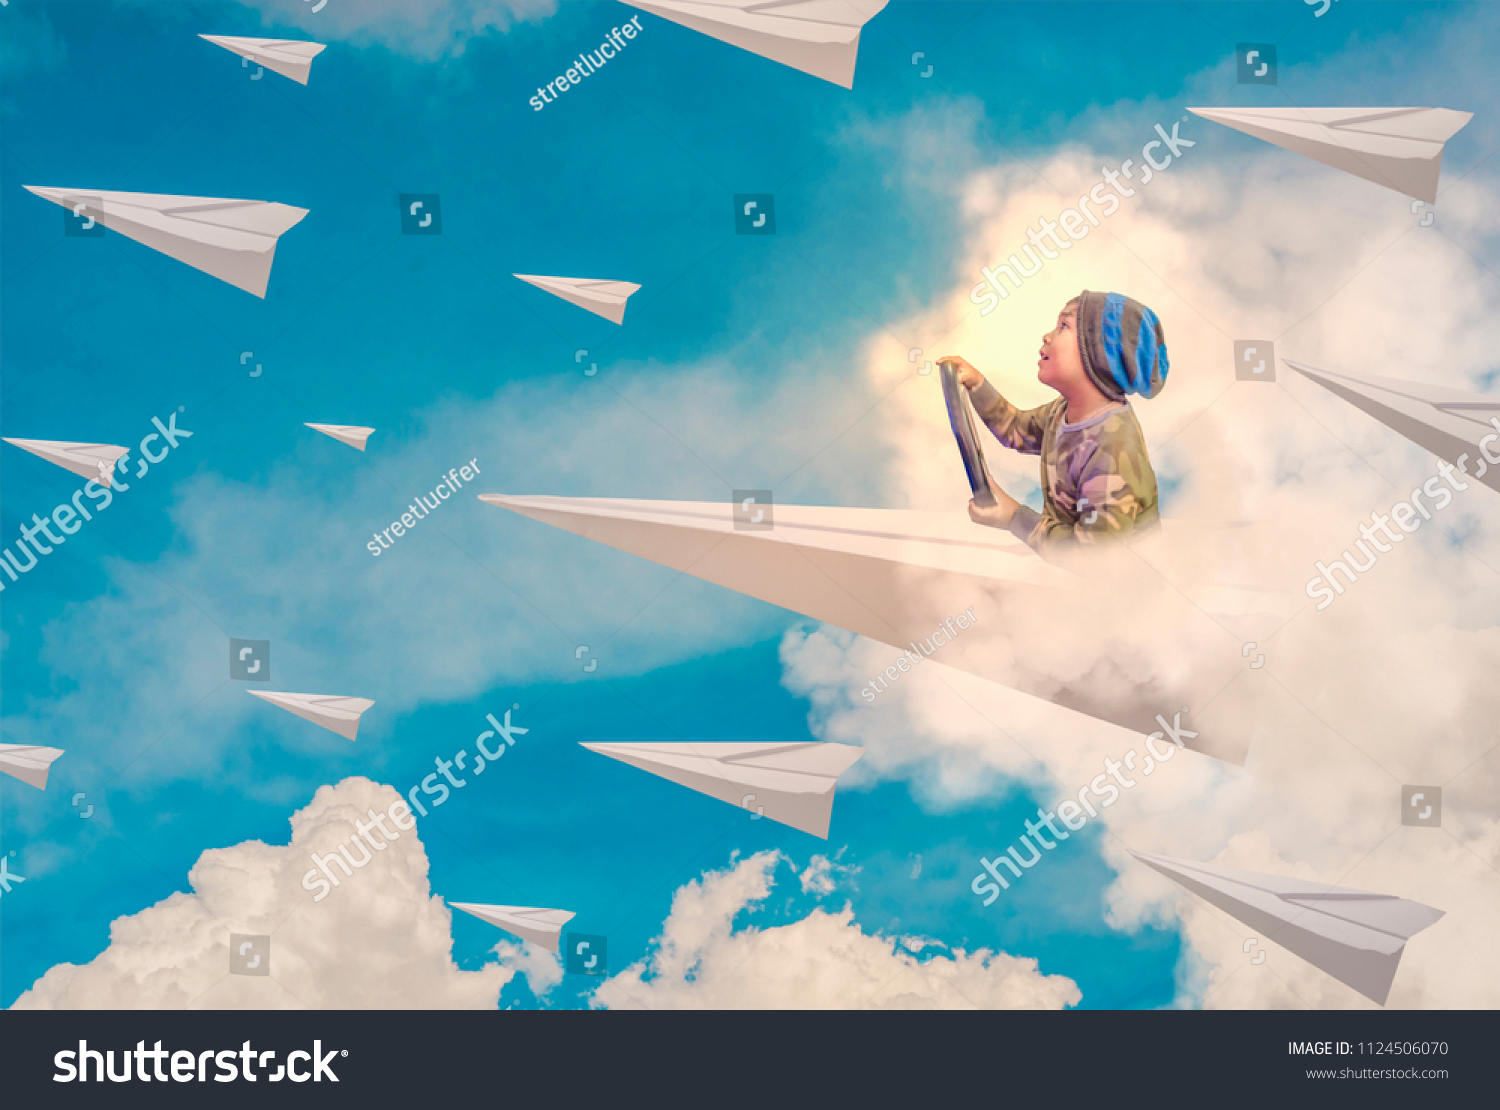 Мой бумажный самолет отправляется в полет. Разноцветные бумажные самолетики. Картины сбумажными самалетиками. Ребенок с бумажным самолетиком. Детские бумажные самолеты.